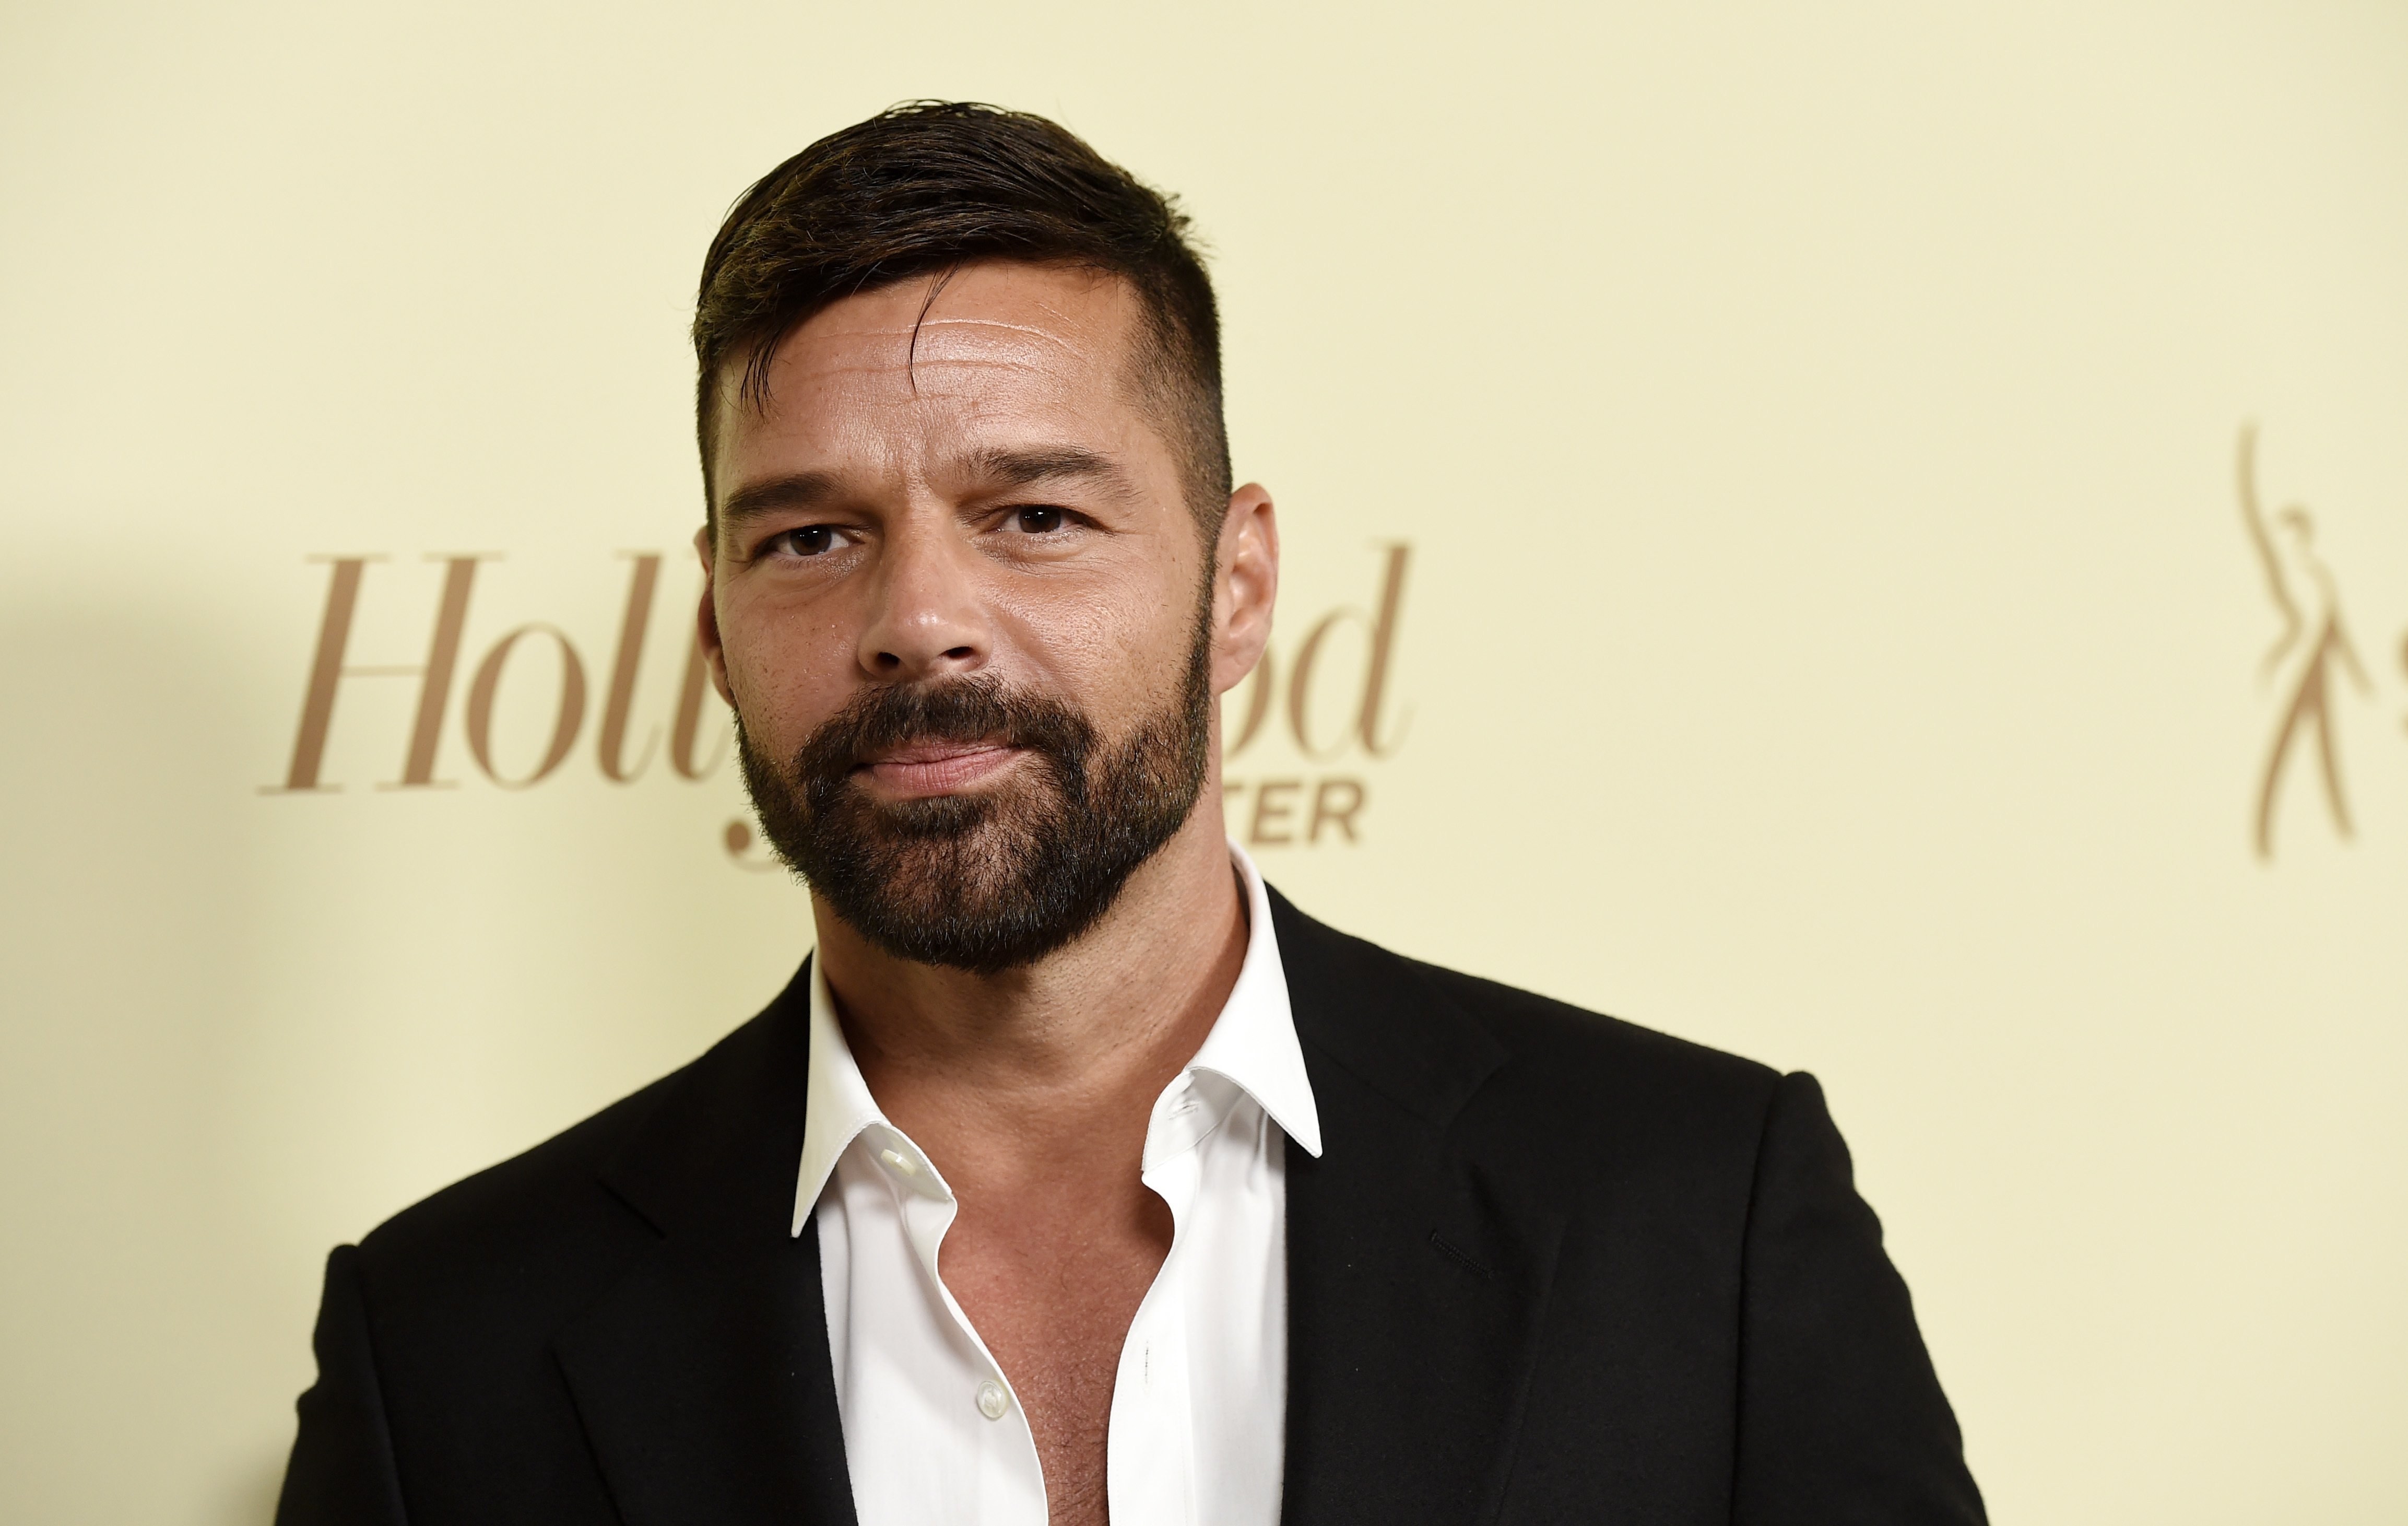 Ricky Martin ja no és guapo: es decolora la barba i ara és blanca. Queda estrany